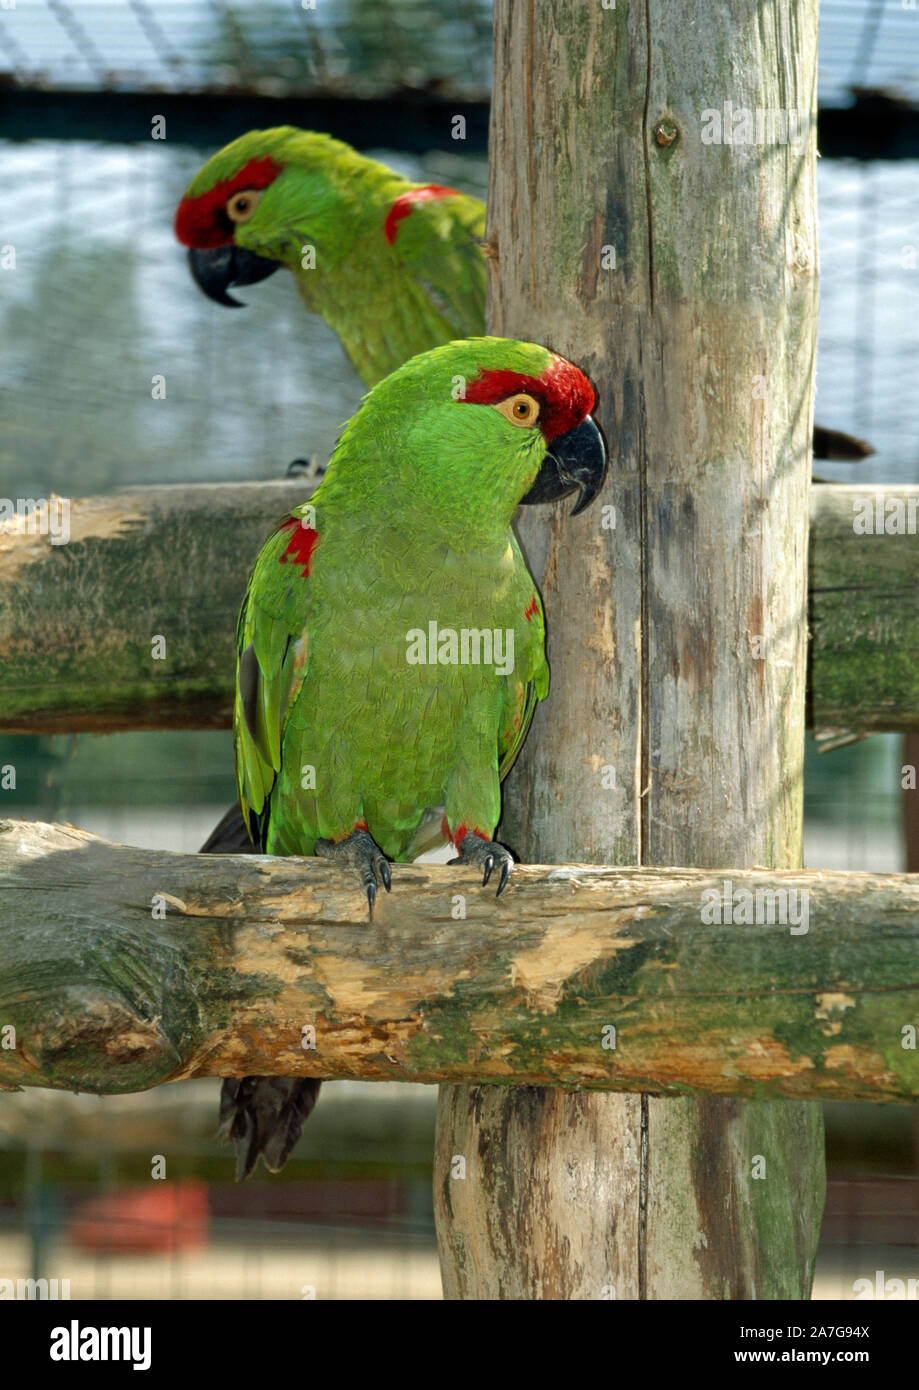 THICK-fatturati pappagalli (Rhynchopsitta pachyrhyncha). Lo Zoo di Jersey, Isole del Canale, Inghilterra, Regno Unito (programma di allevamento.) specie in via di estinzione. Foto Stock